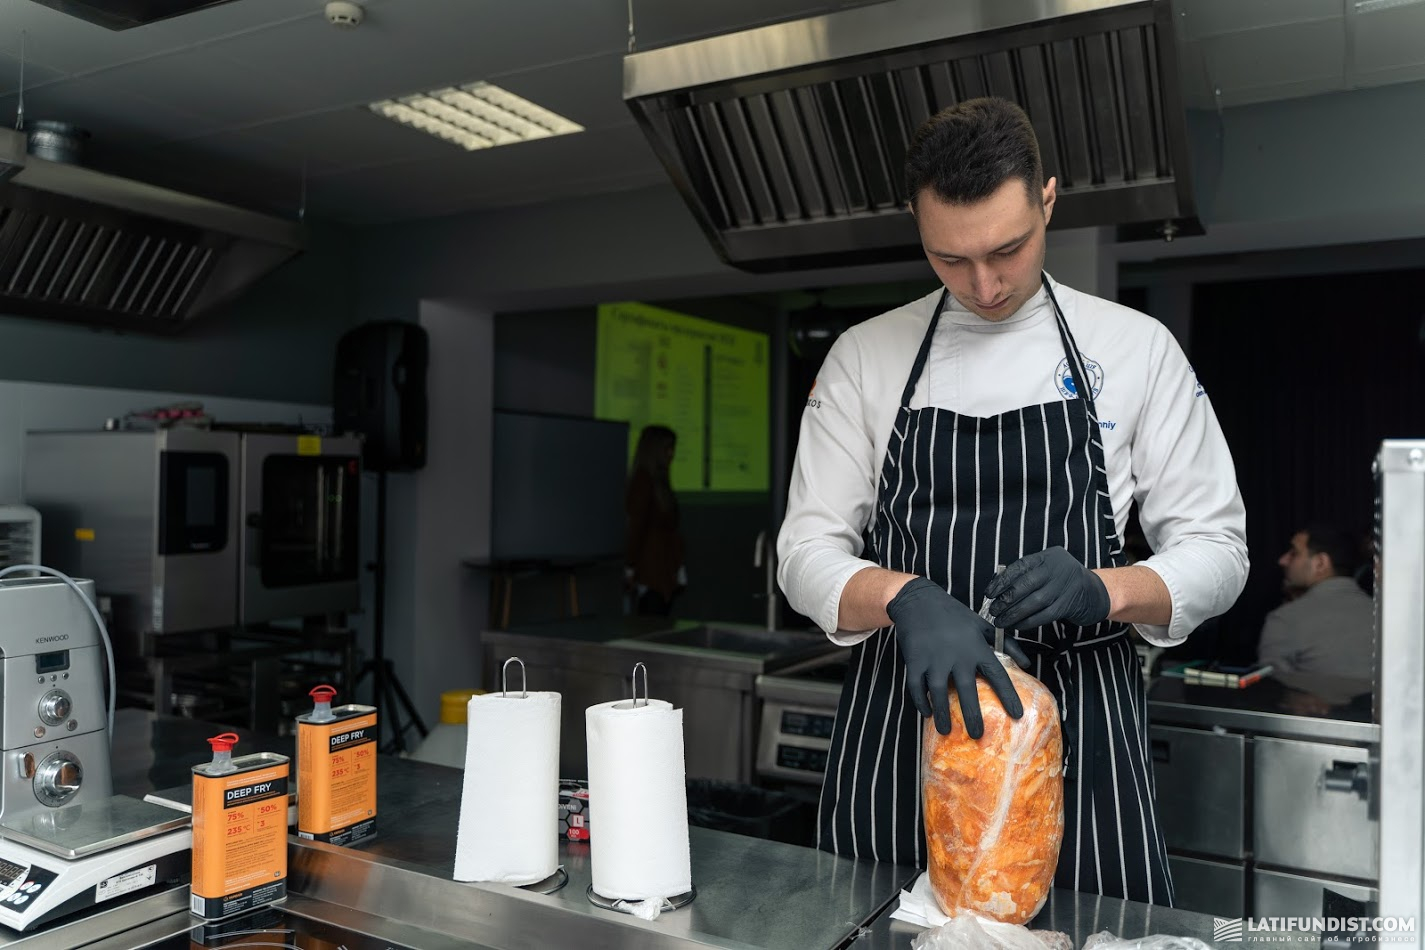 Никита Розумный, шеф-повар, бронзовый призер чемпионата Украины по кулинарному искусству в номинации «Золотой шеф-повар 2018»